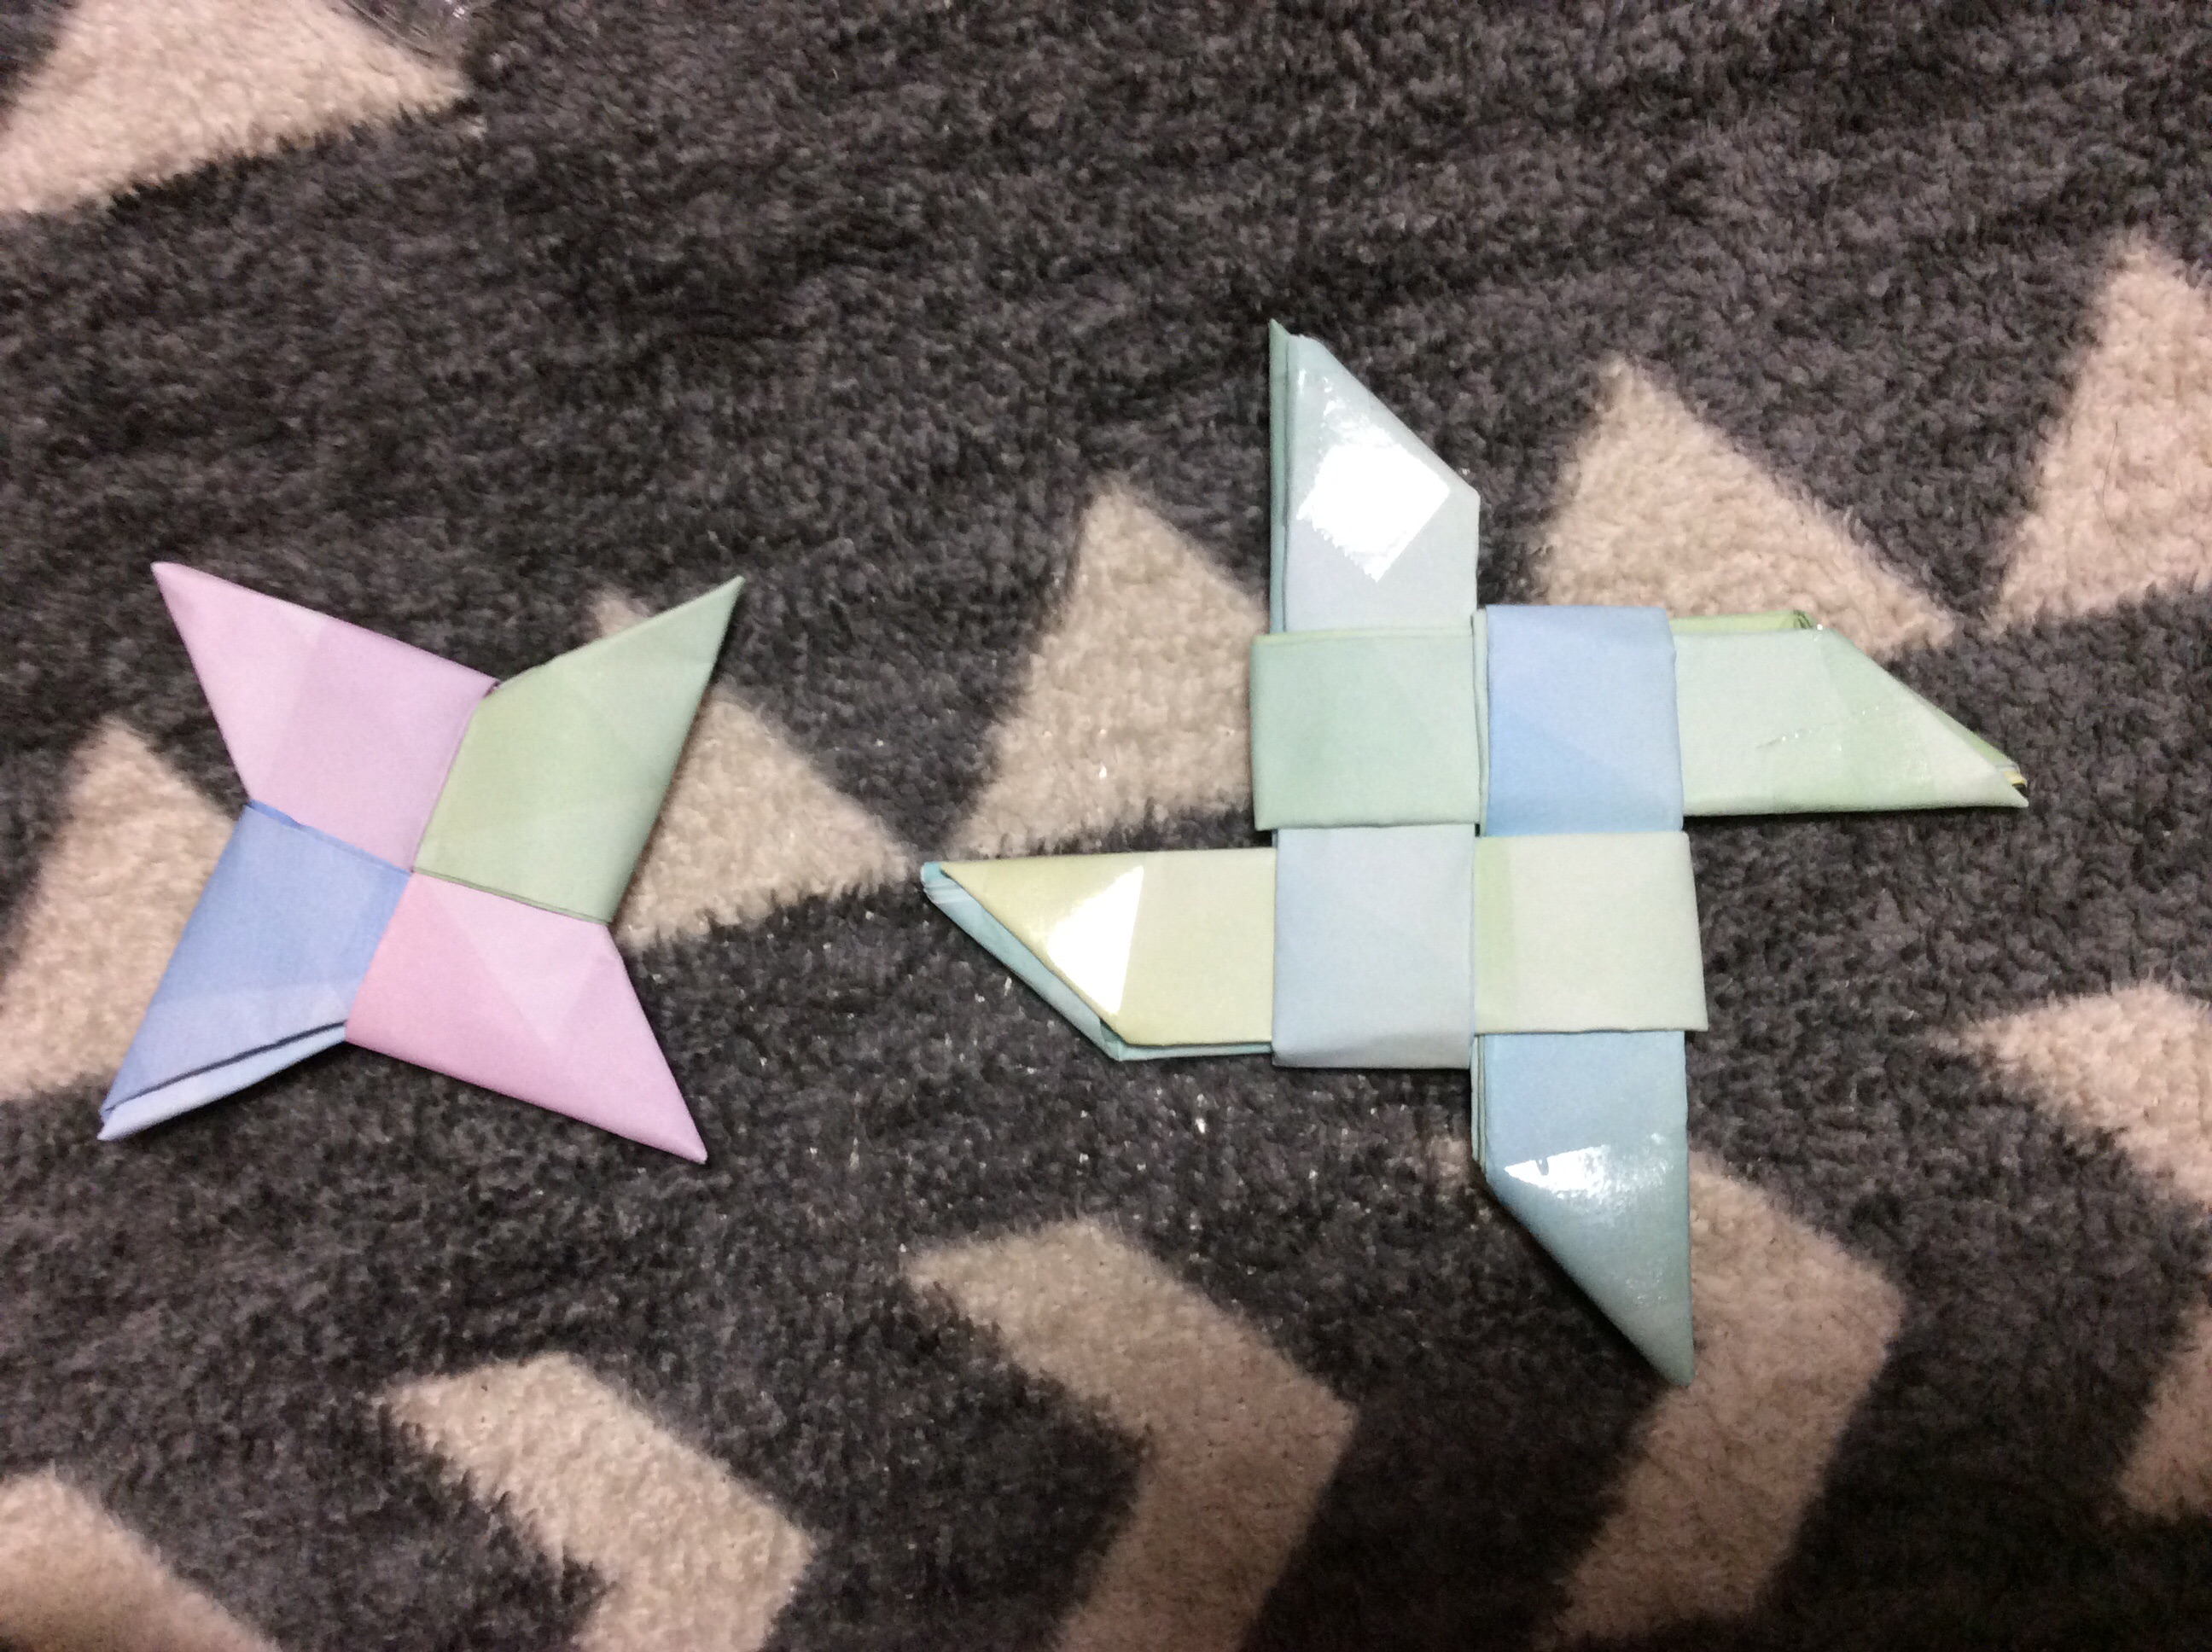 折り紙で手裏剣を簡単に作る方法 2種類の折り方を分かりやすく解説 折り紙オンライン